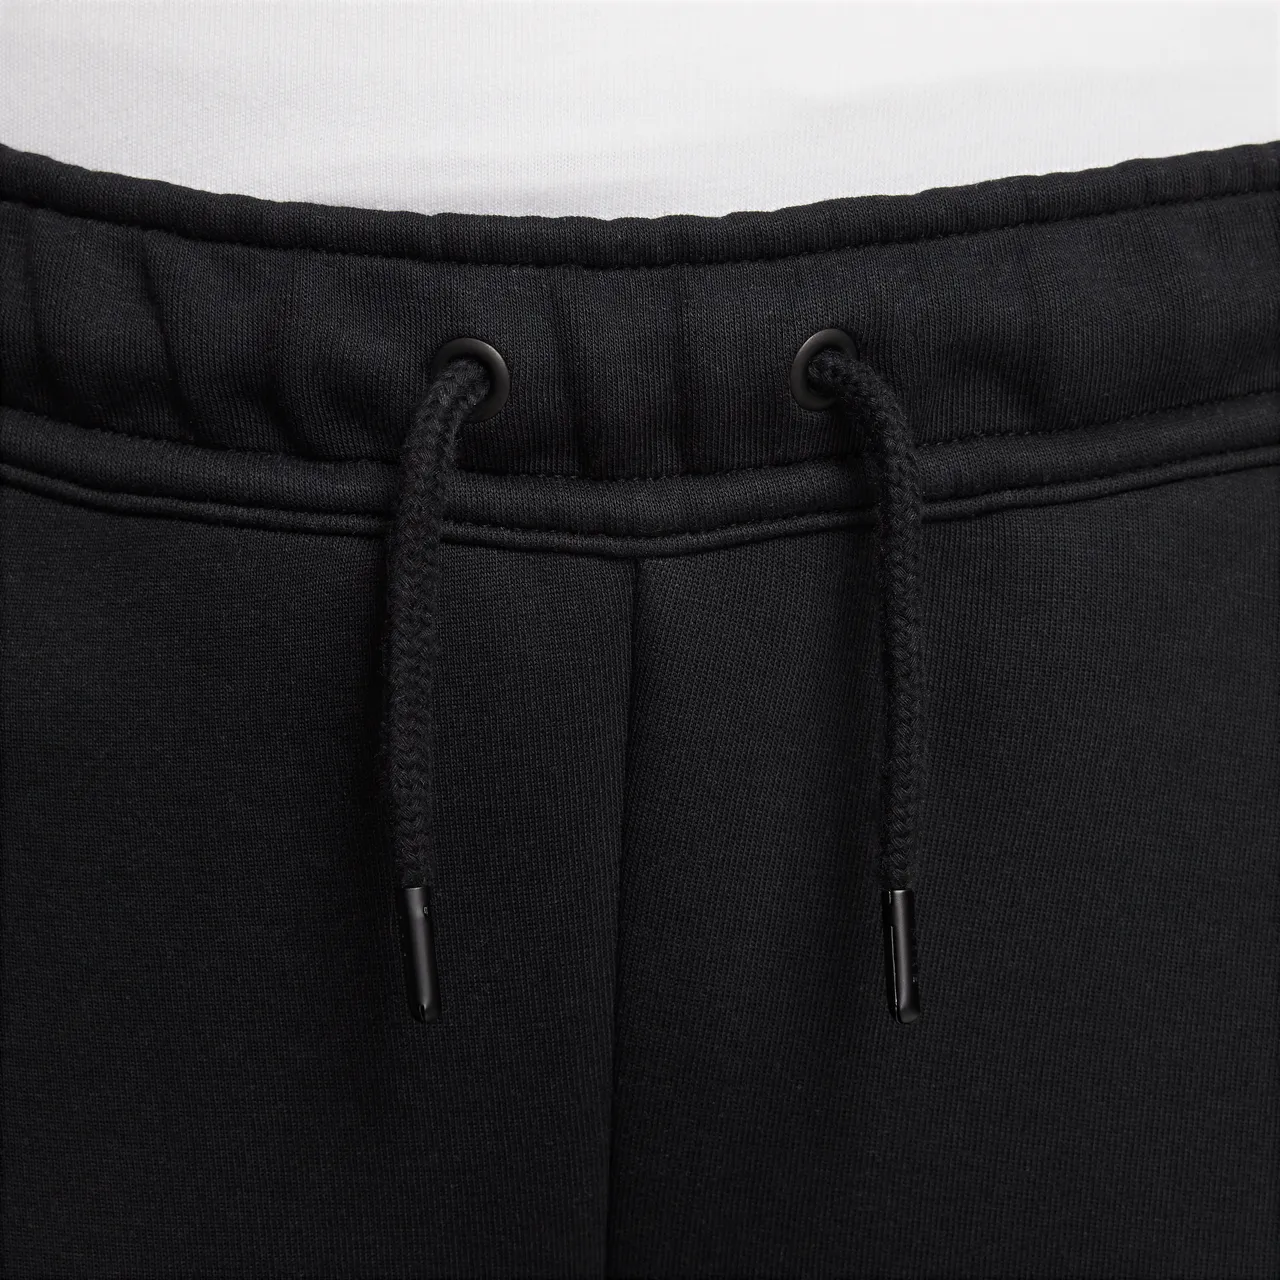 Nike Sportswear Tech Fleece Older Kids' (Boys') Trousers - Black - Cotton